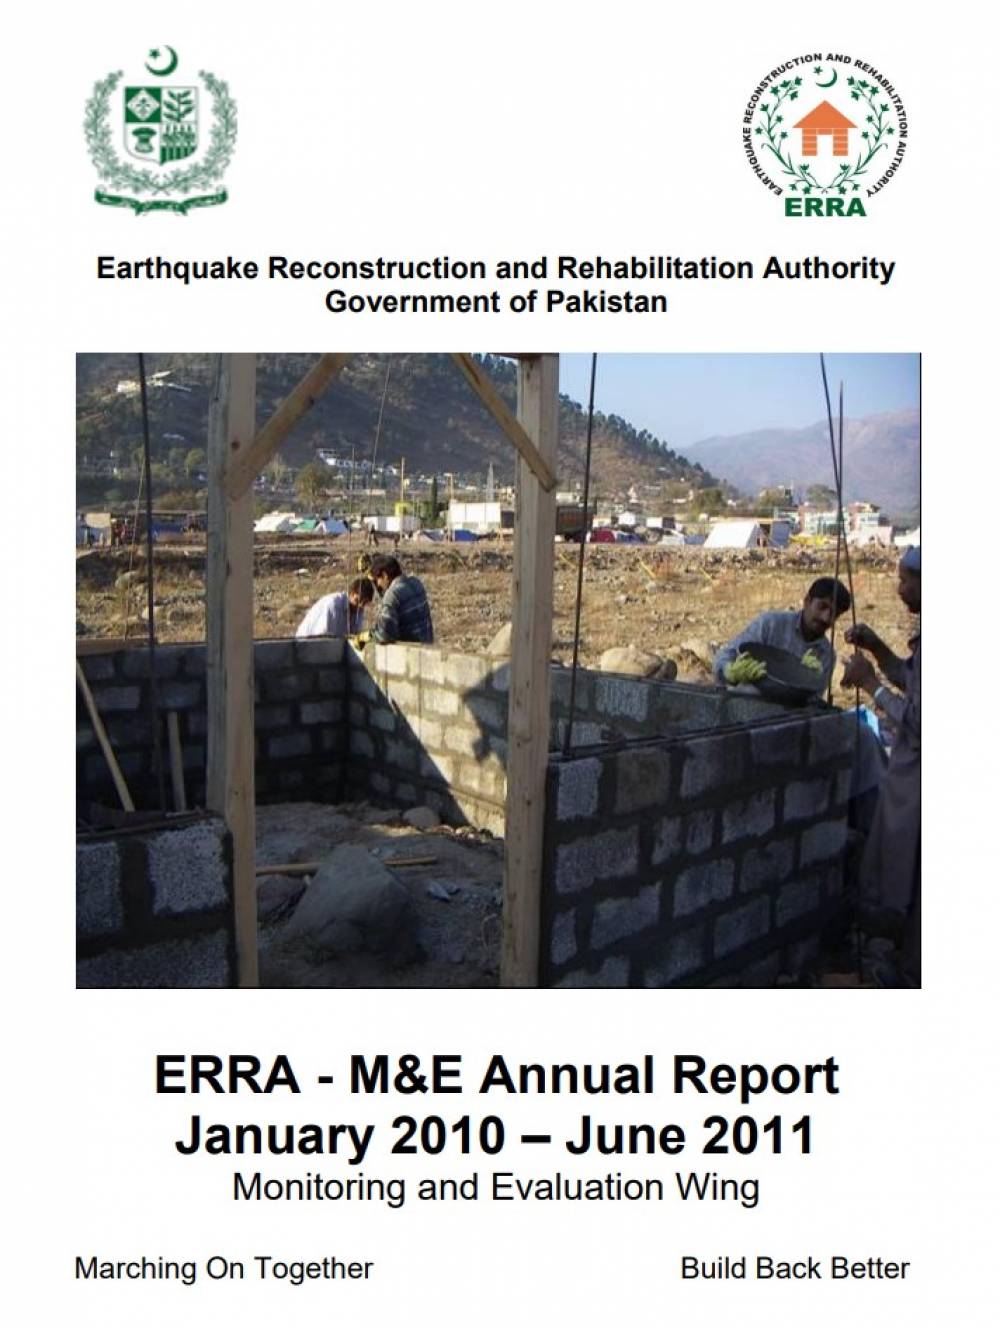 M&E Annual Report 2010-2011